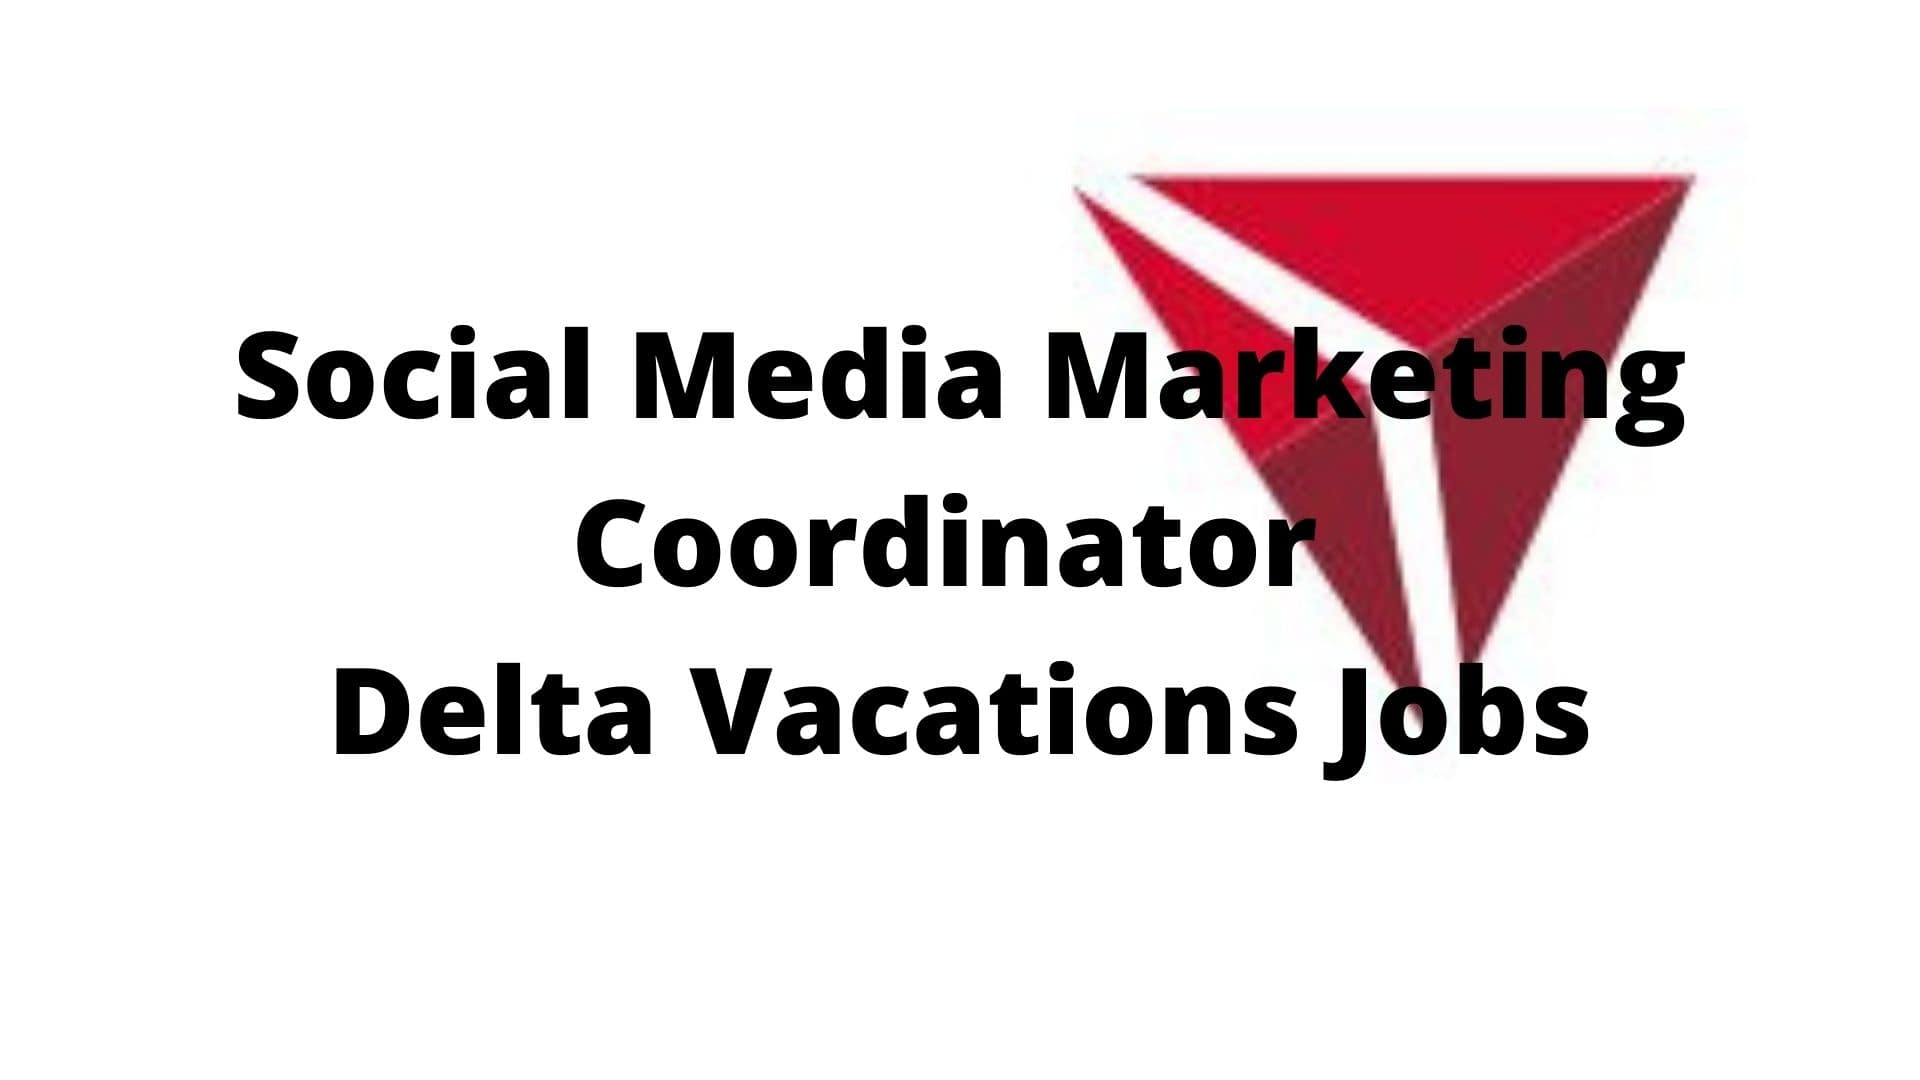 Social Media Marketing Coordinator Delta Vacations Jobs